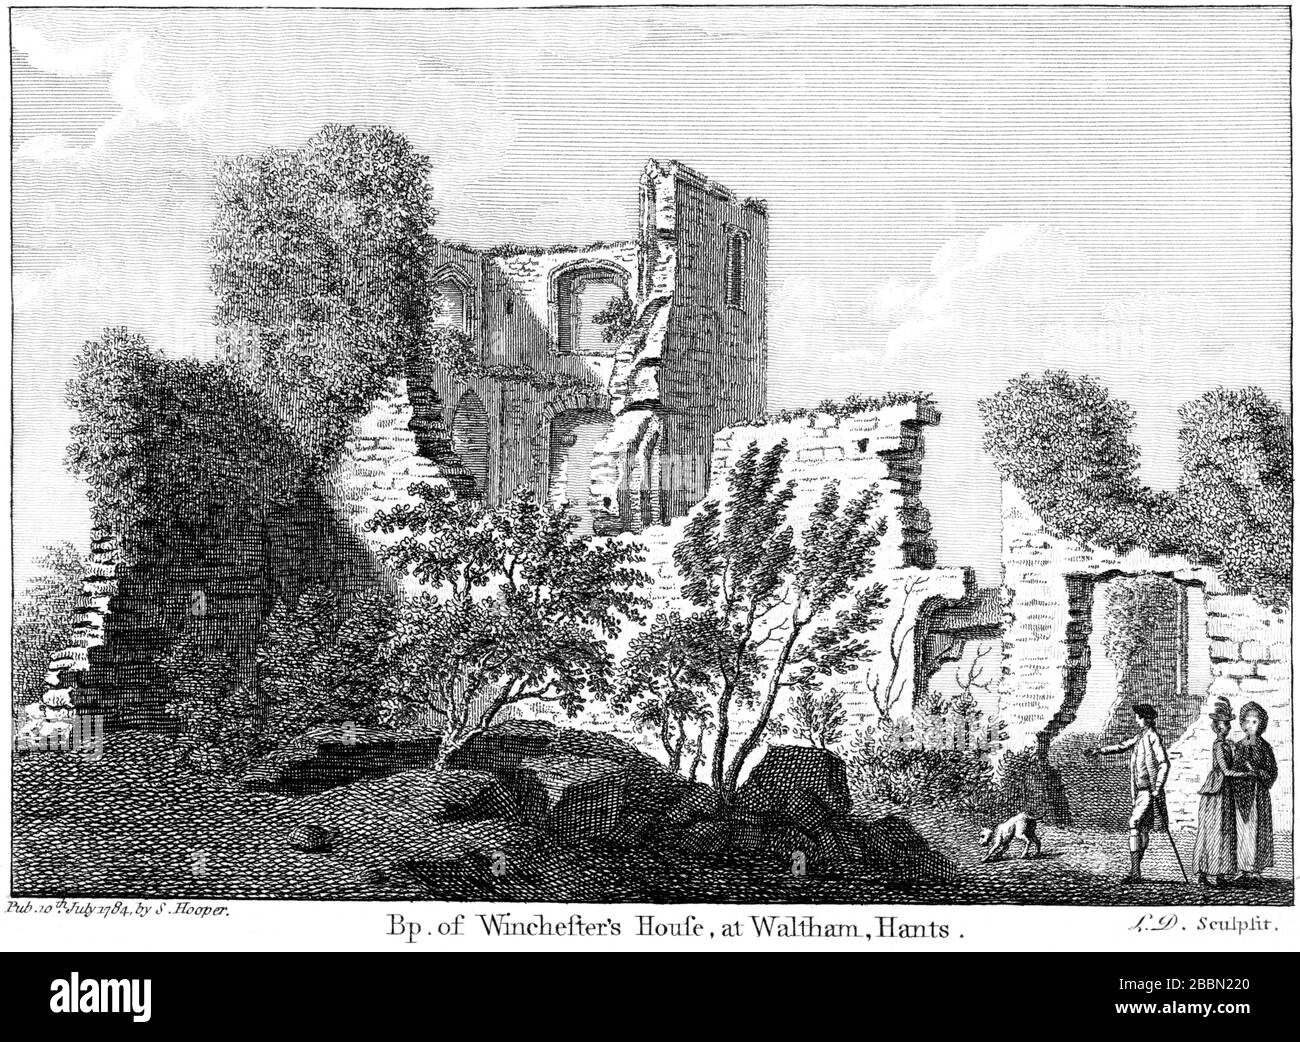 Eine Gravur von BP. Des Winchesters House in Waltham, Hants, 1784 (Bishops Waltham Palace), die in hoher Auflösung aus einem Buch gescannt wurde, das um das Jahr 1786 veröffentlicht wurde Stockfoto